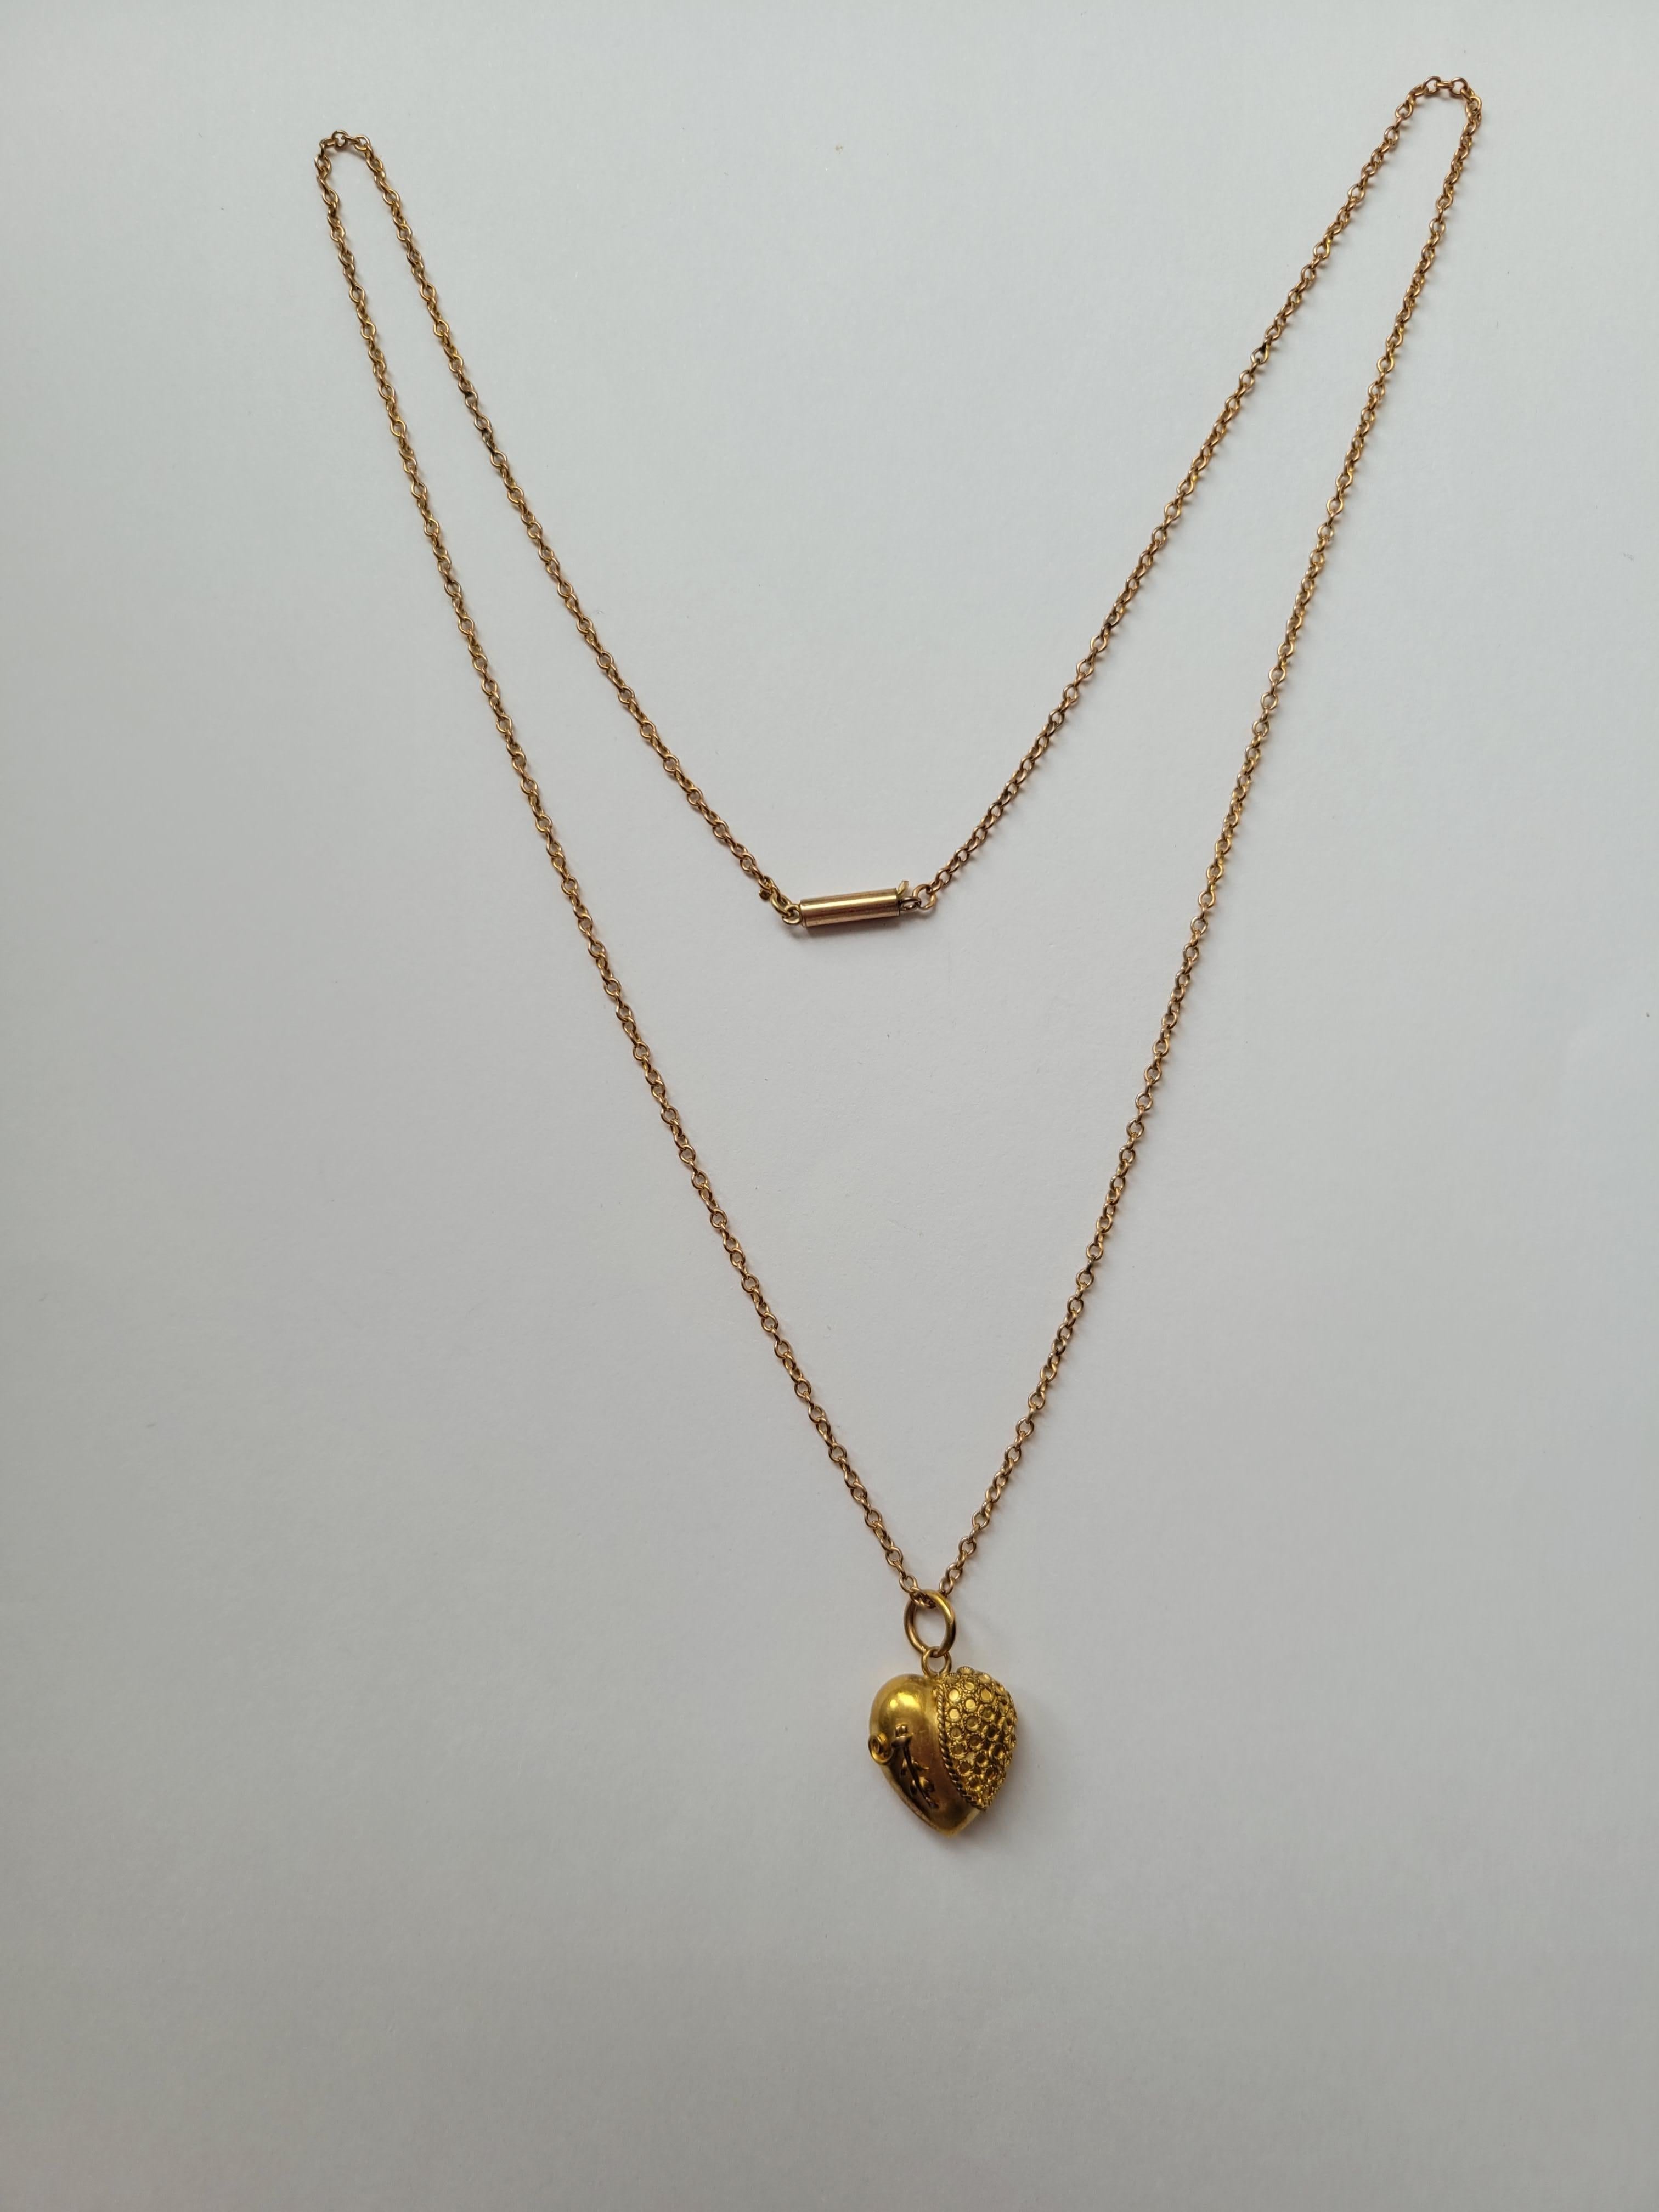 Un adorable pendentif en forme de cœur bouffant en or 15 carats de l'époque victorienne vers 1880, monté sur une chaîne en or 9 carats de l'époque victorienne. Origine anglaise. 

Pendentif : hauteur 20 mm, largeur 12 mm.
Marqué 15 CT pour l'or 15